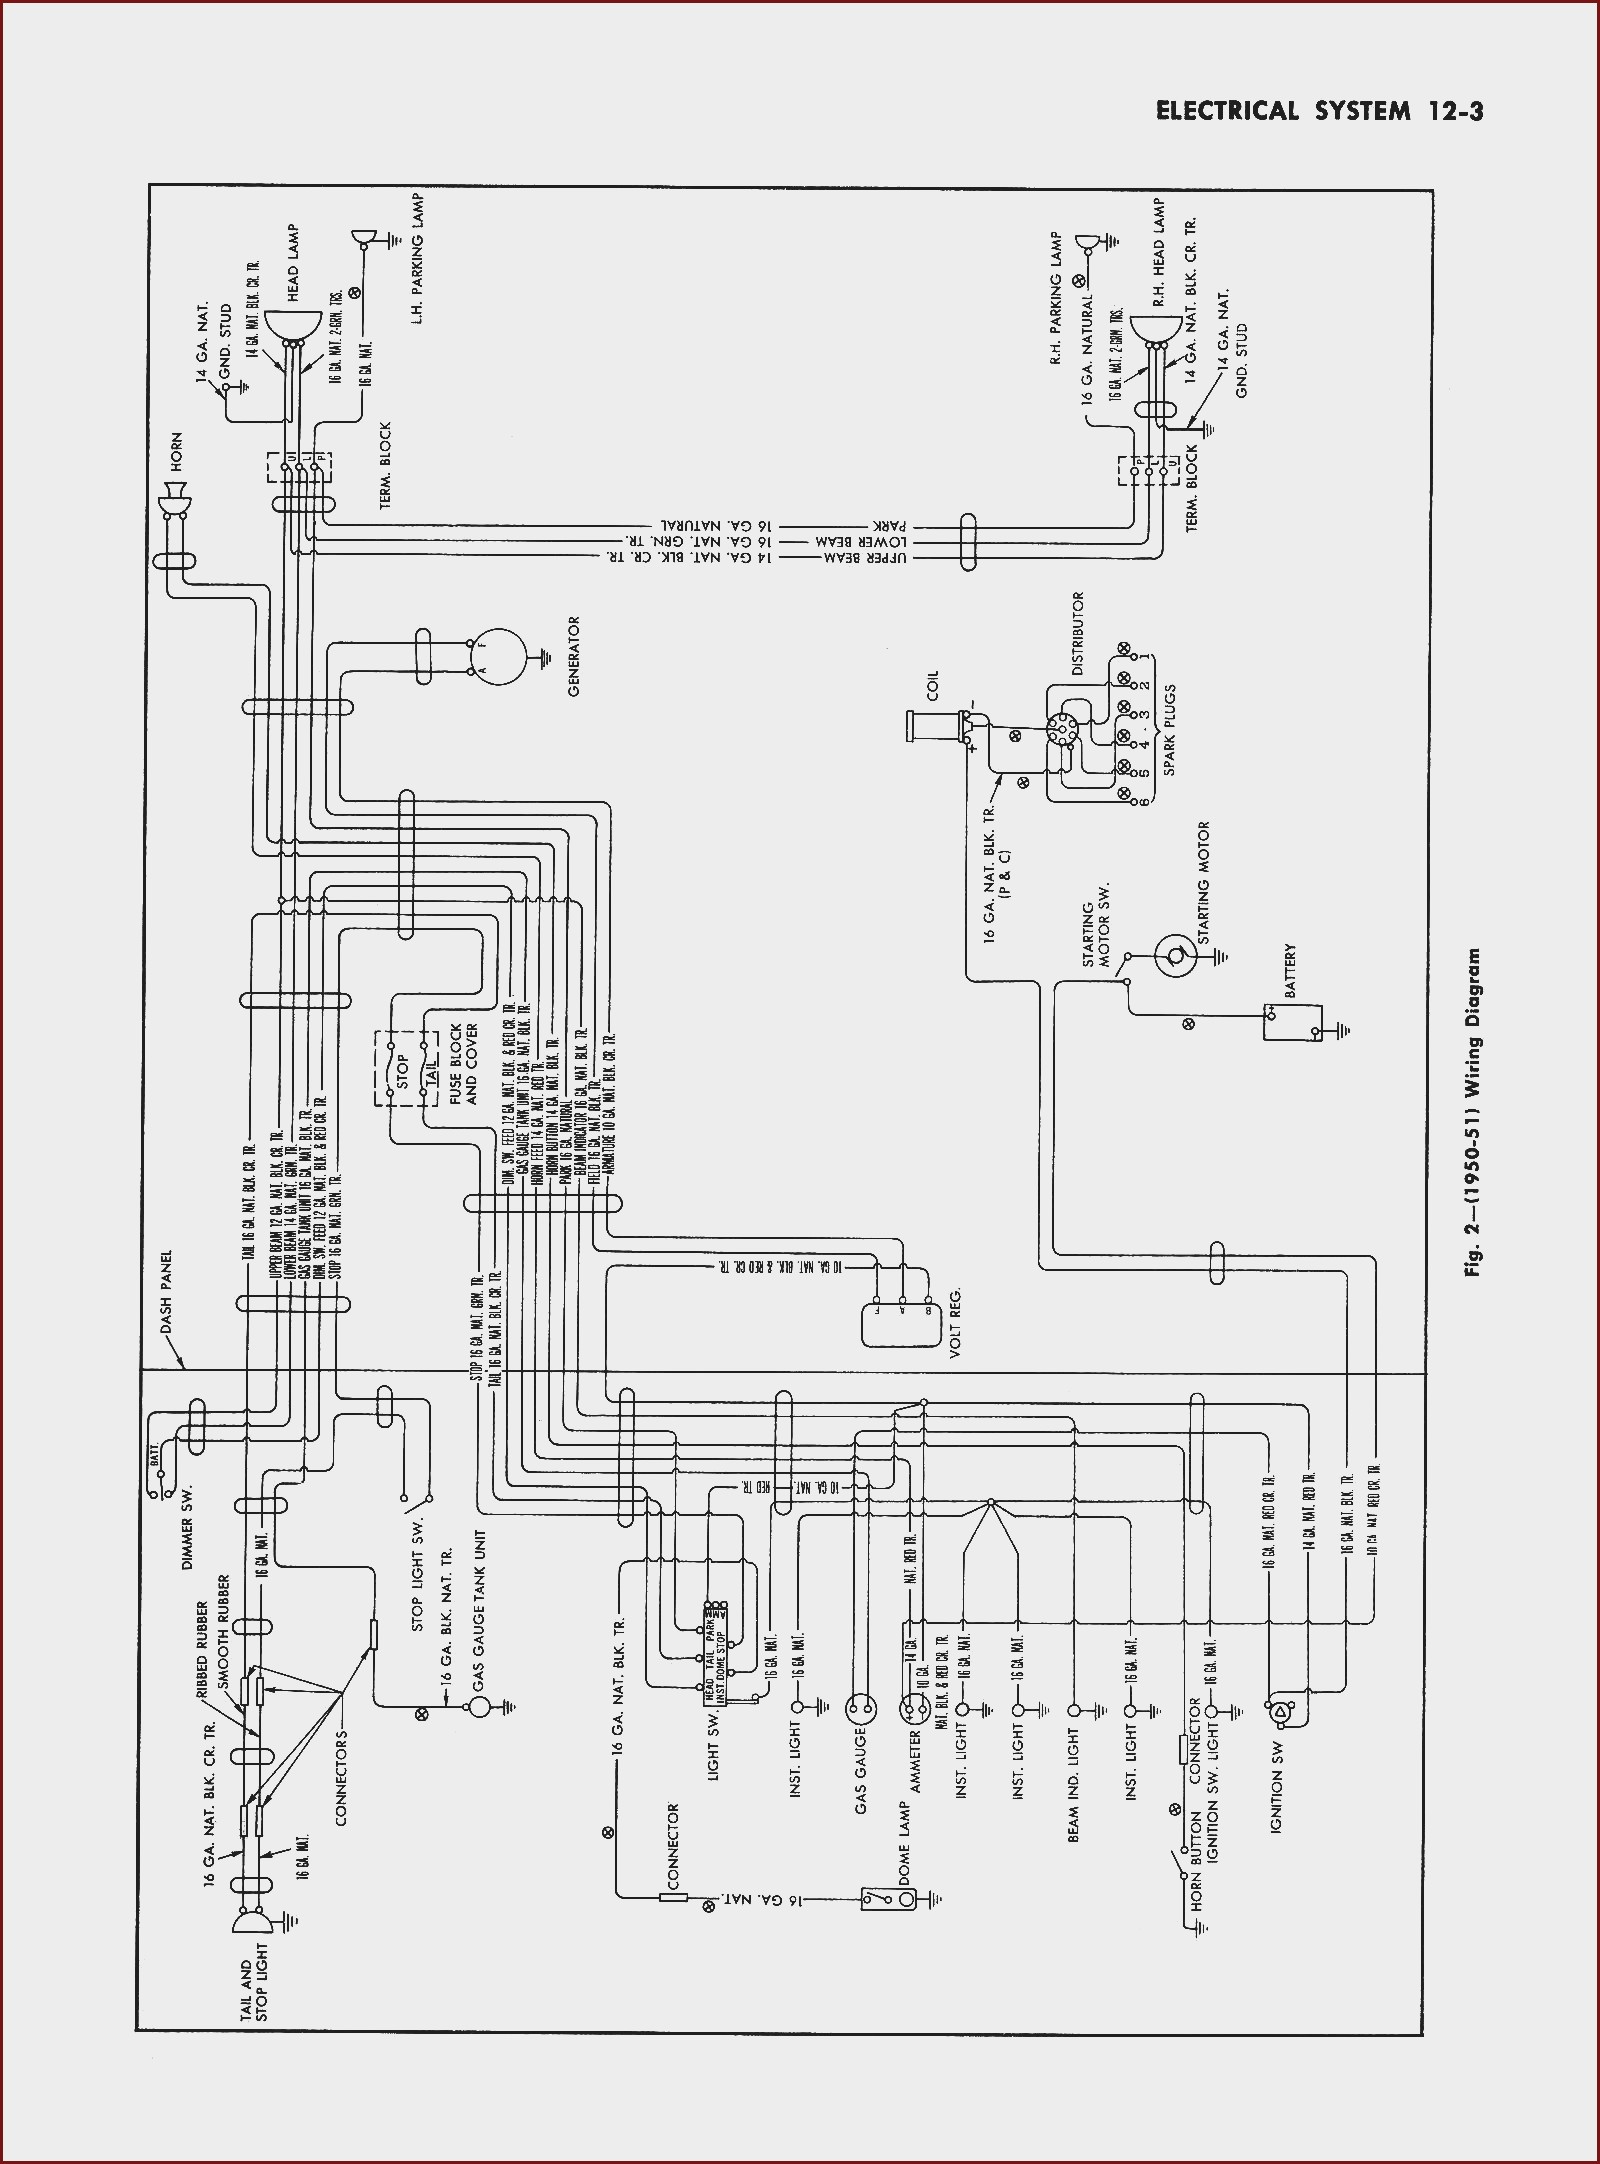 Basic Turn Signal Wiring Diagram Bose Lifestyle 5 Wiring Diagram at Manuals Library Of Basic Turn Signal Wiring Diagram